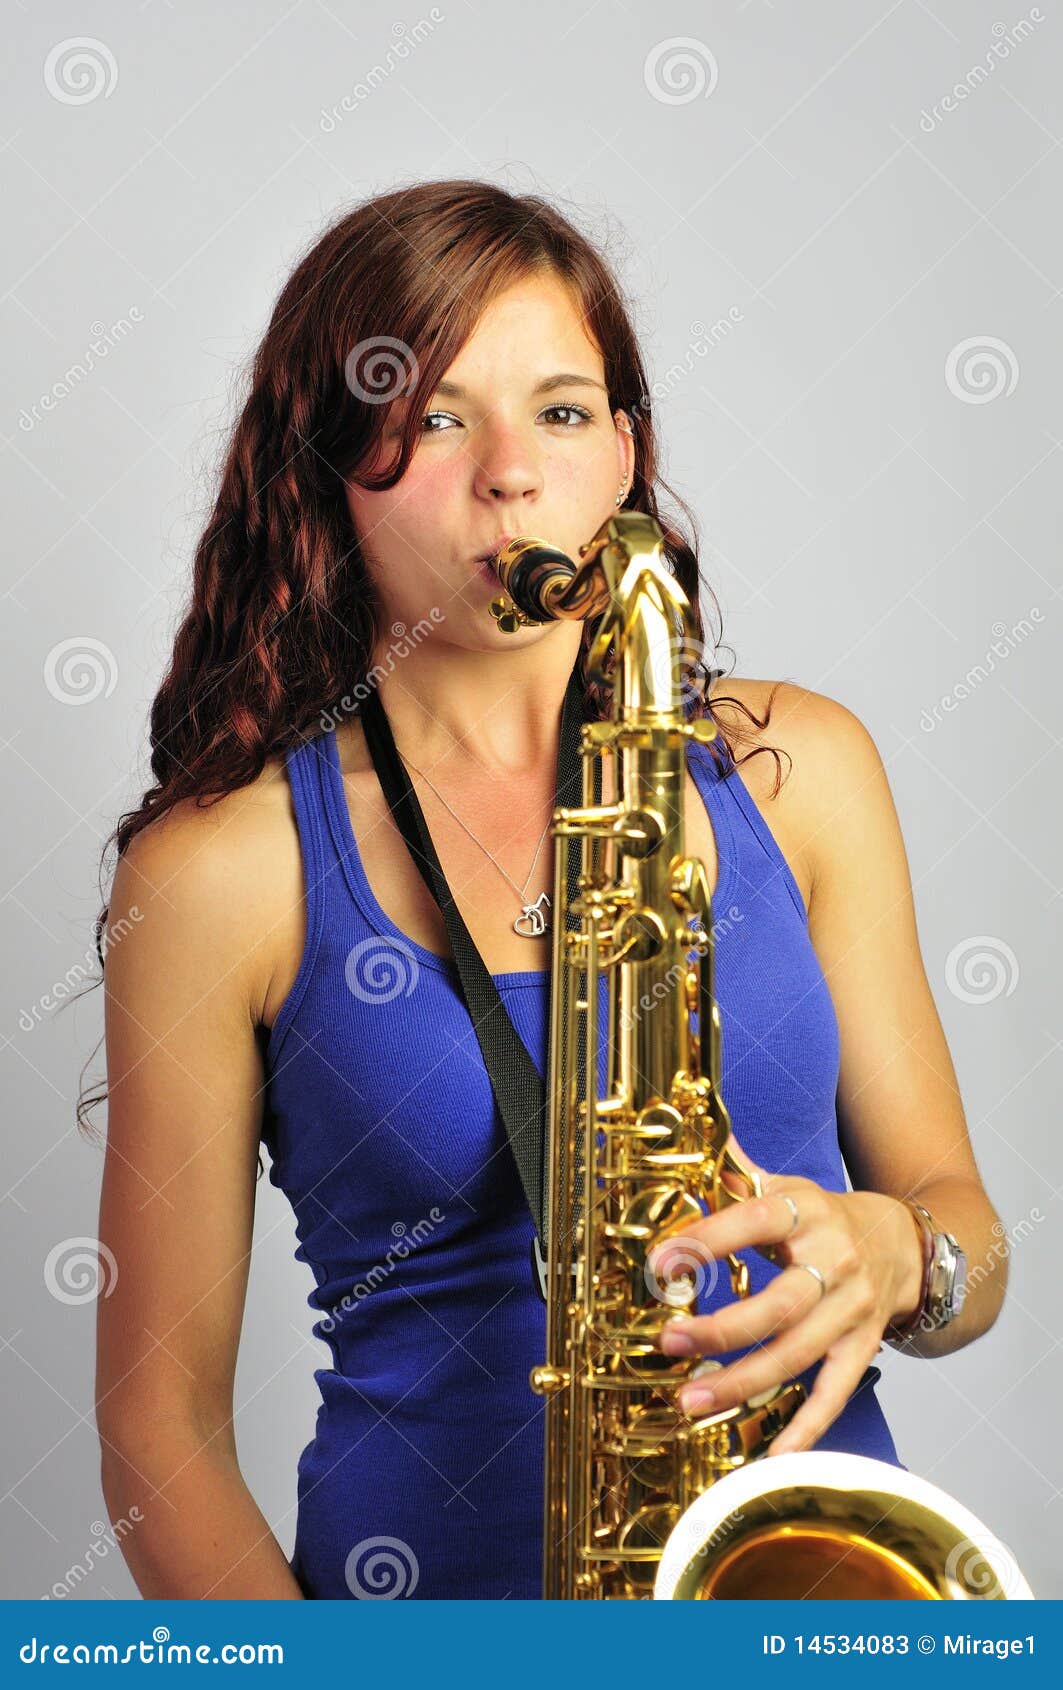 Музыка саксофона играют девушки. Девушка с саксофоном. Девушка с саксофоном на сцене. Ребенок играющий на саксофоне. Девушка с саксофоном в студии звукозаписи.